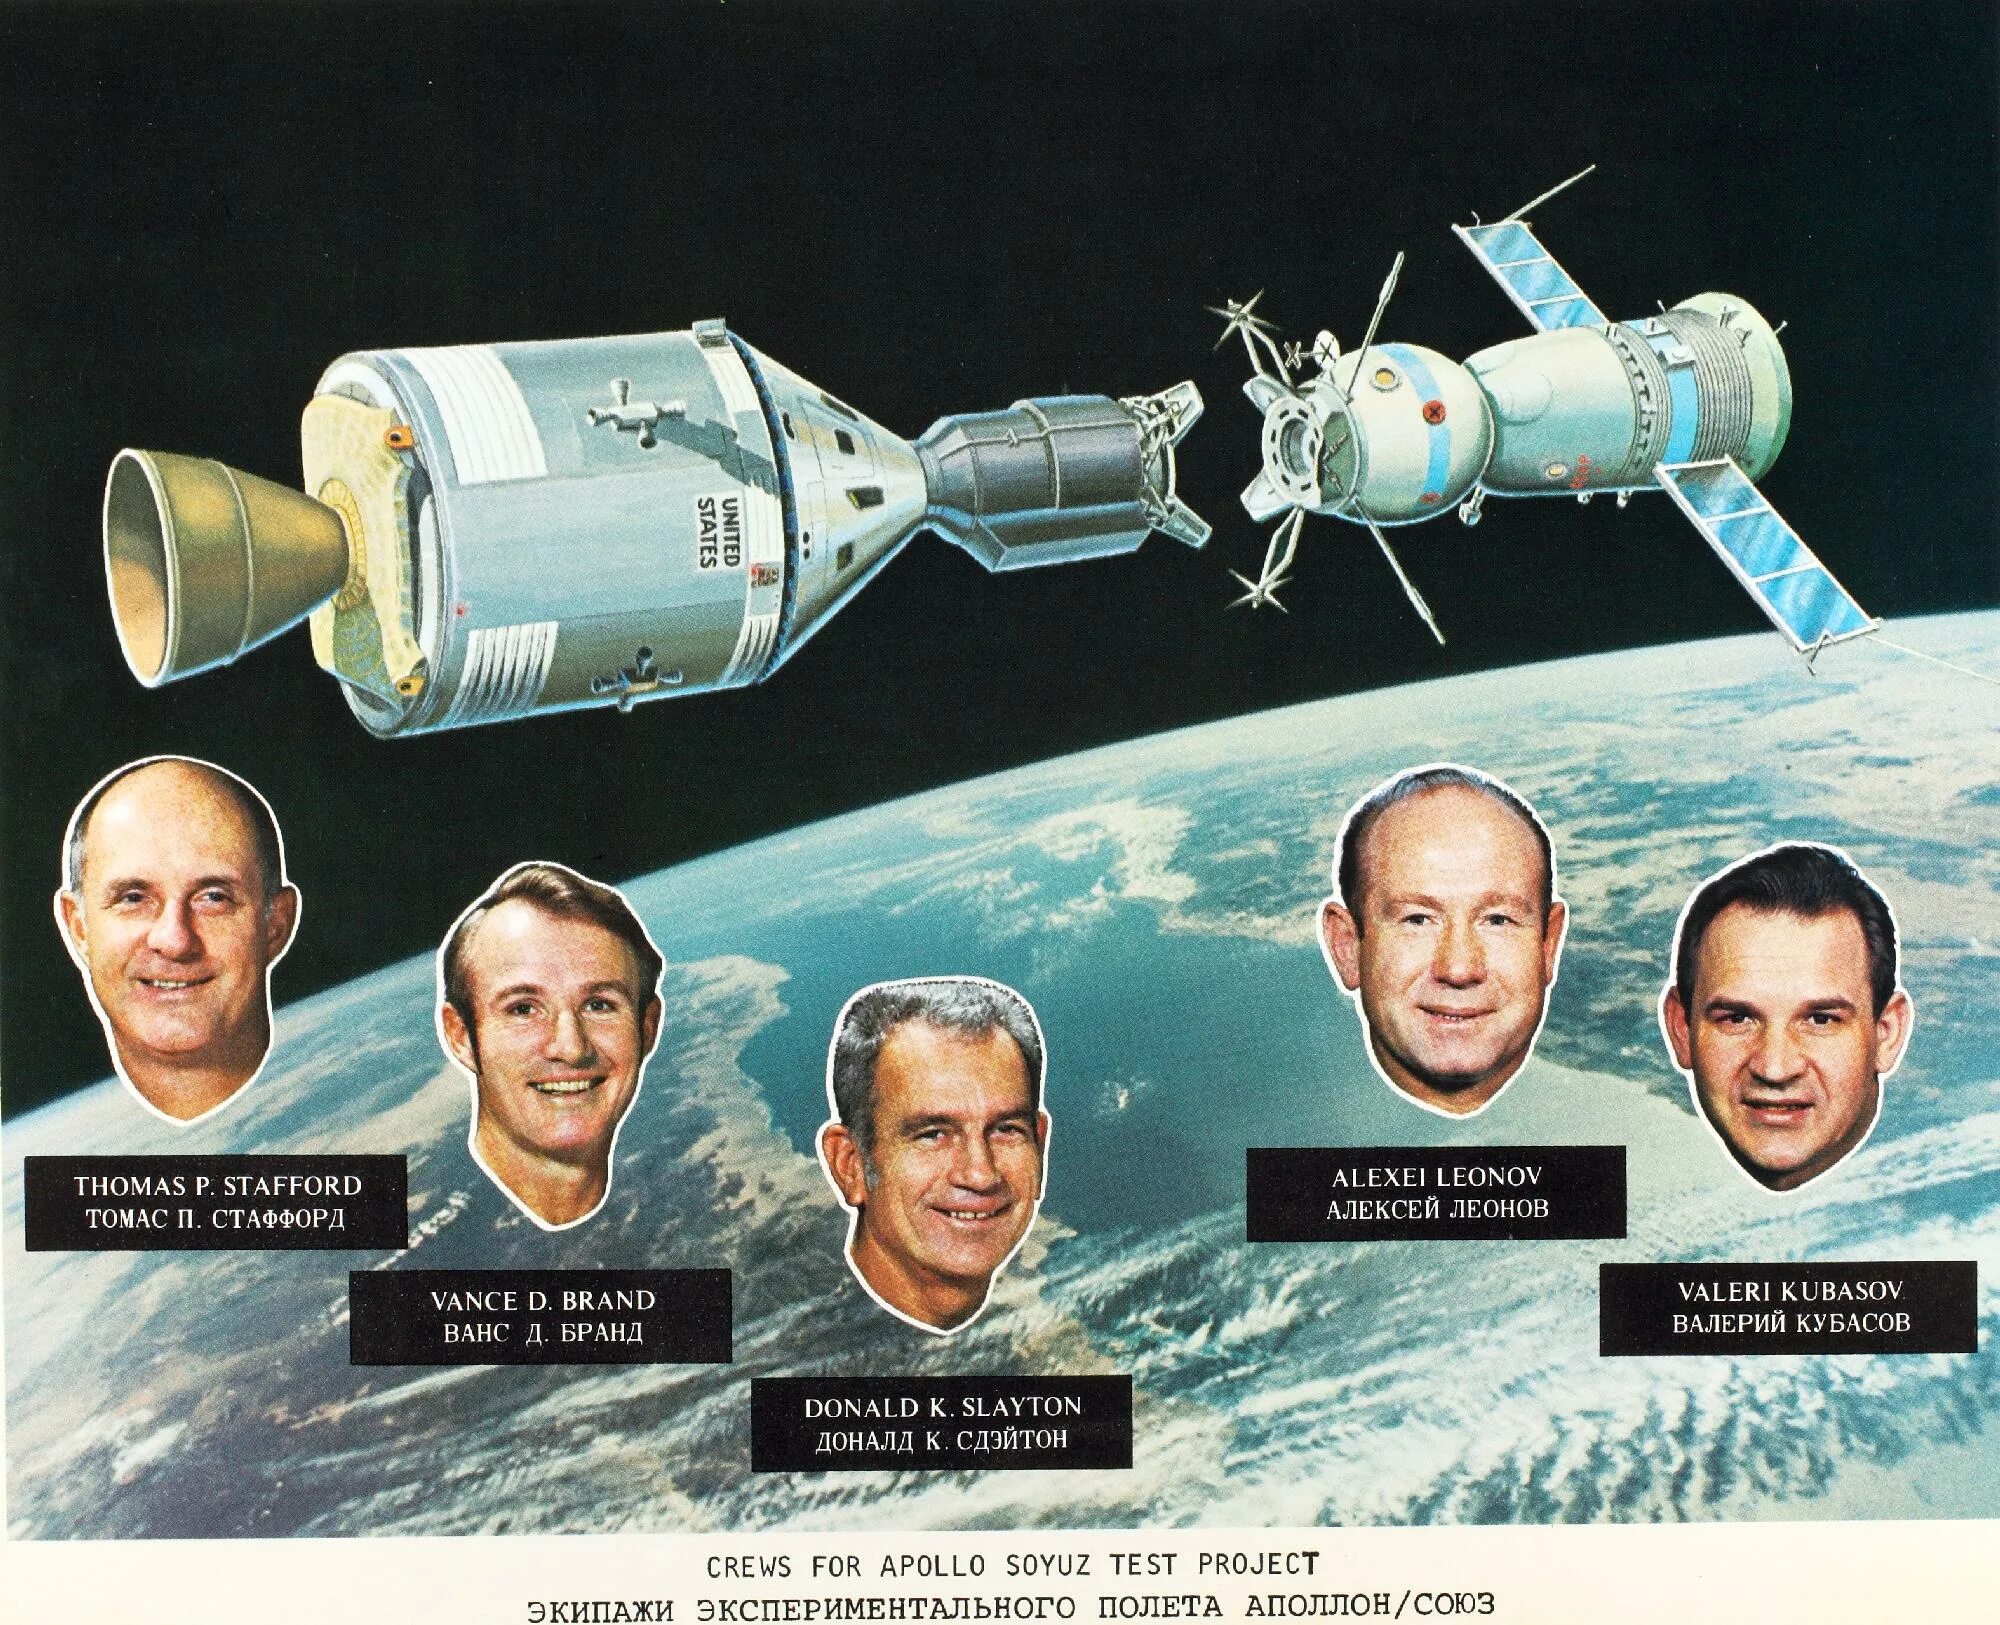 Первый длительный космический полет. Полет Союз-Аполлон 1975. Советский корабль «Союз-19» и американский корабль «Аполлон».. Советско-американский полет в космос по программе Союз Аполлон. 1975 Стыковка кораблей Союз и Аполлон.